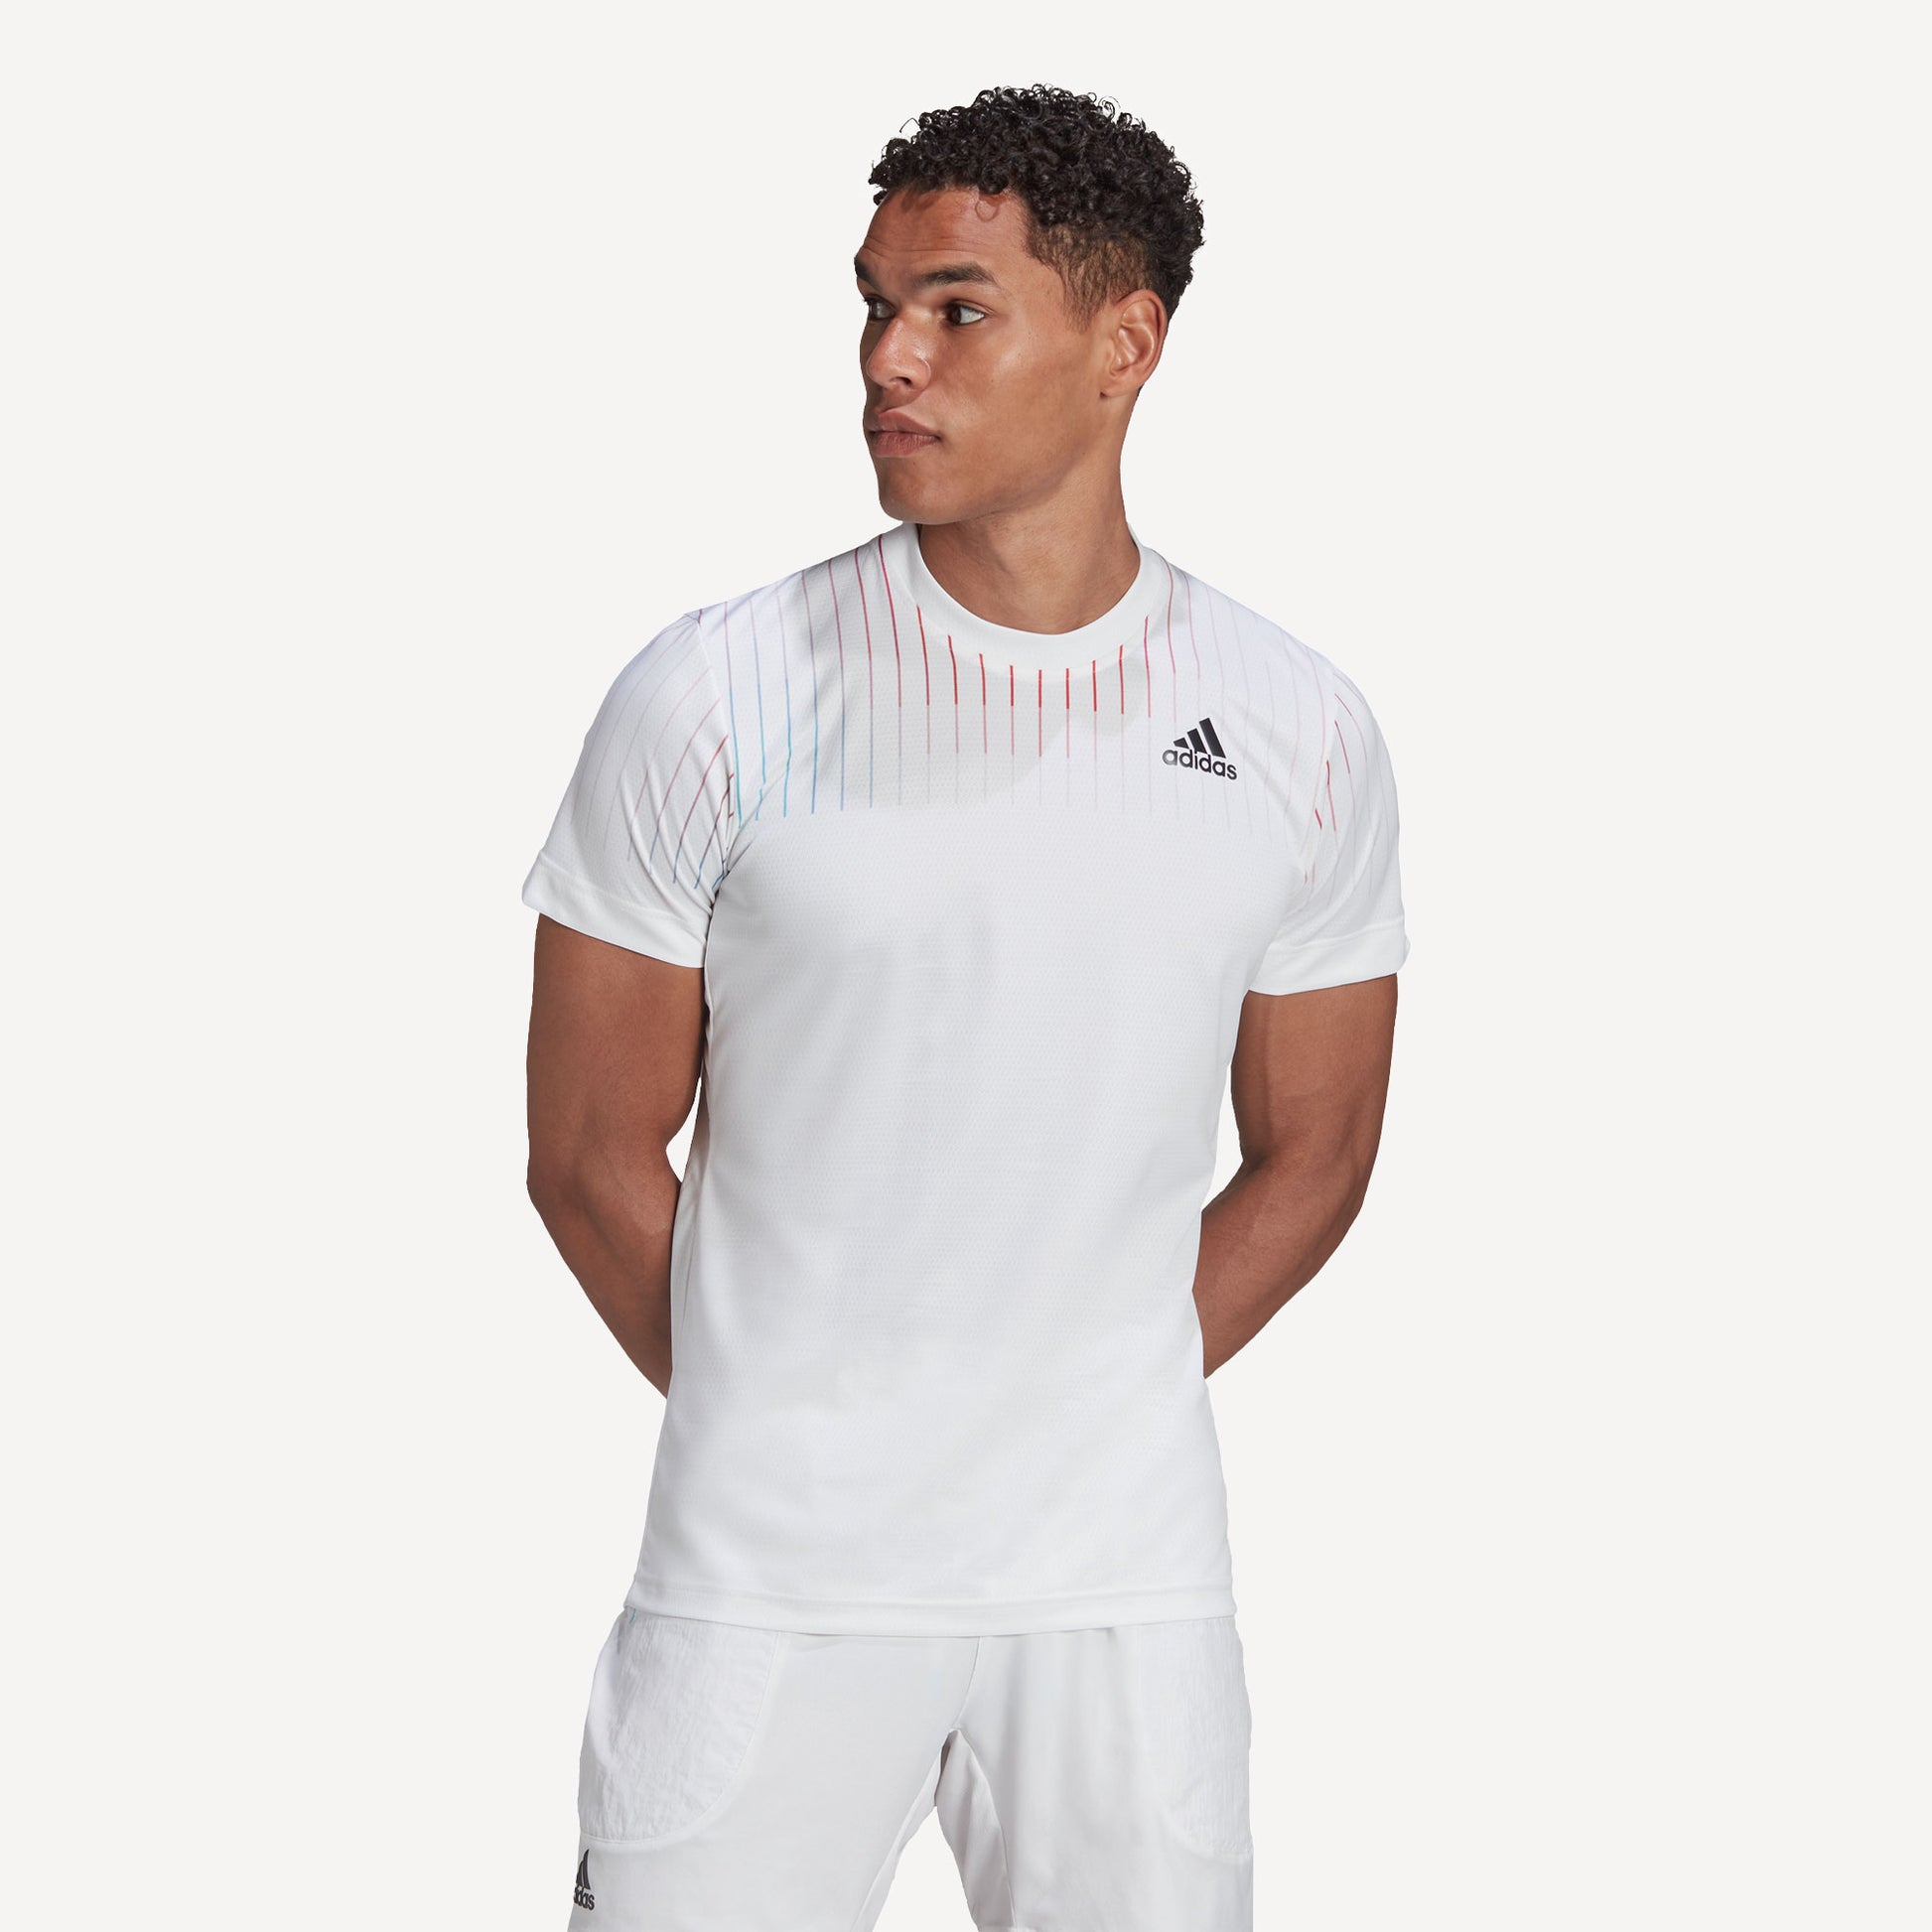 adidas Melbourne Freelift Men's Tennis Shirt White (1)